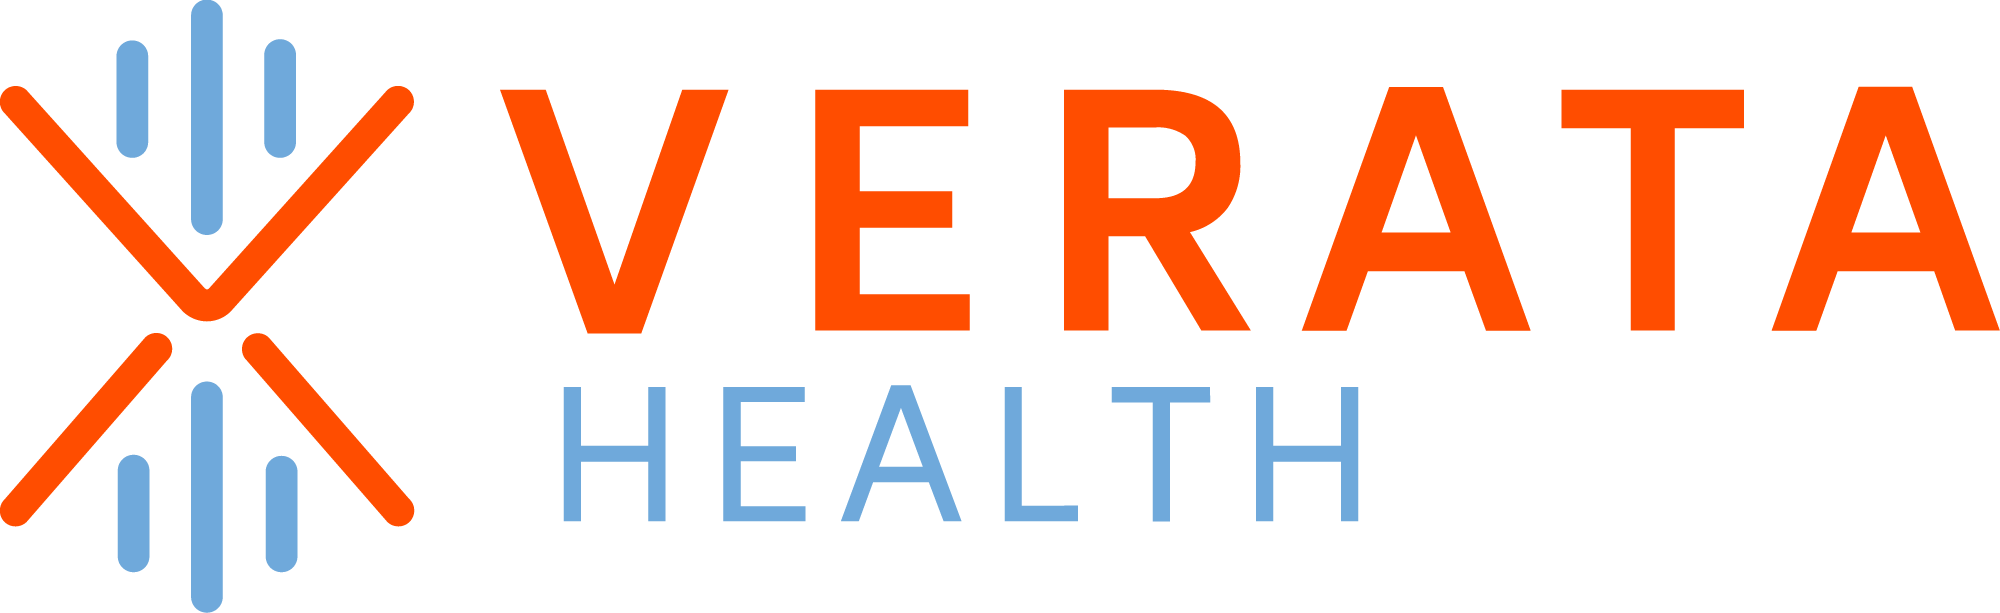 Verata Health